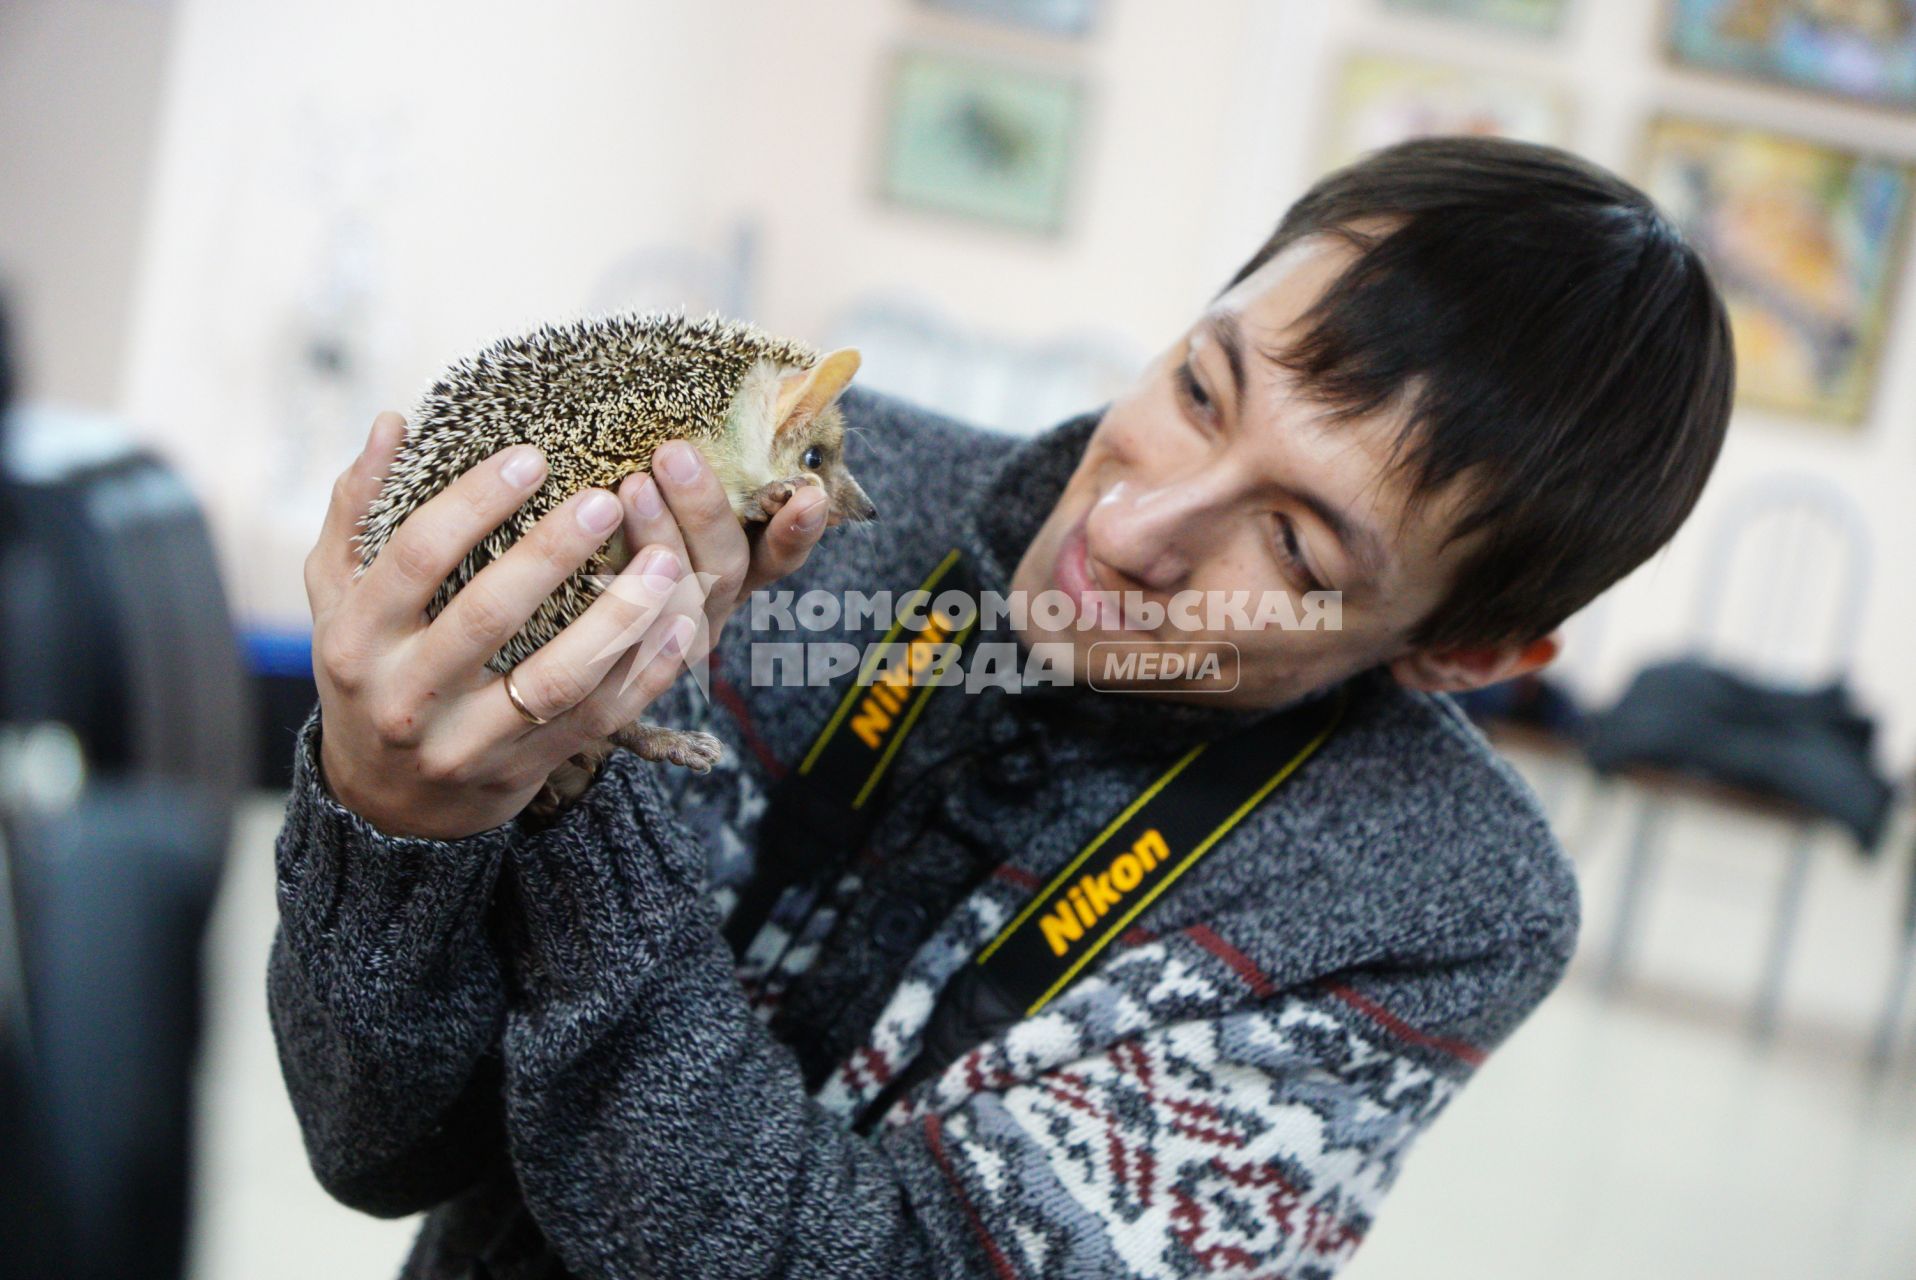 Екатеринбург. Сотрудник зоопарка держит на руках ежиху Пуговку перед началом ее традиционного предсказания погоды на весну.